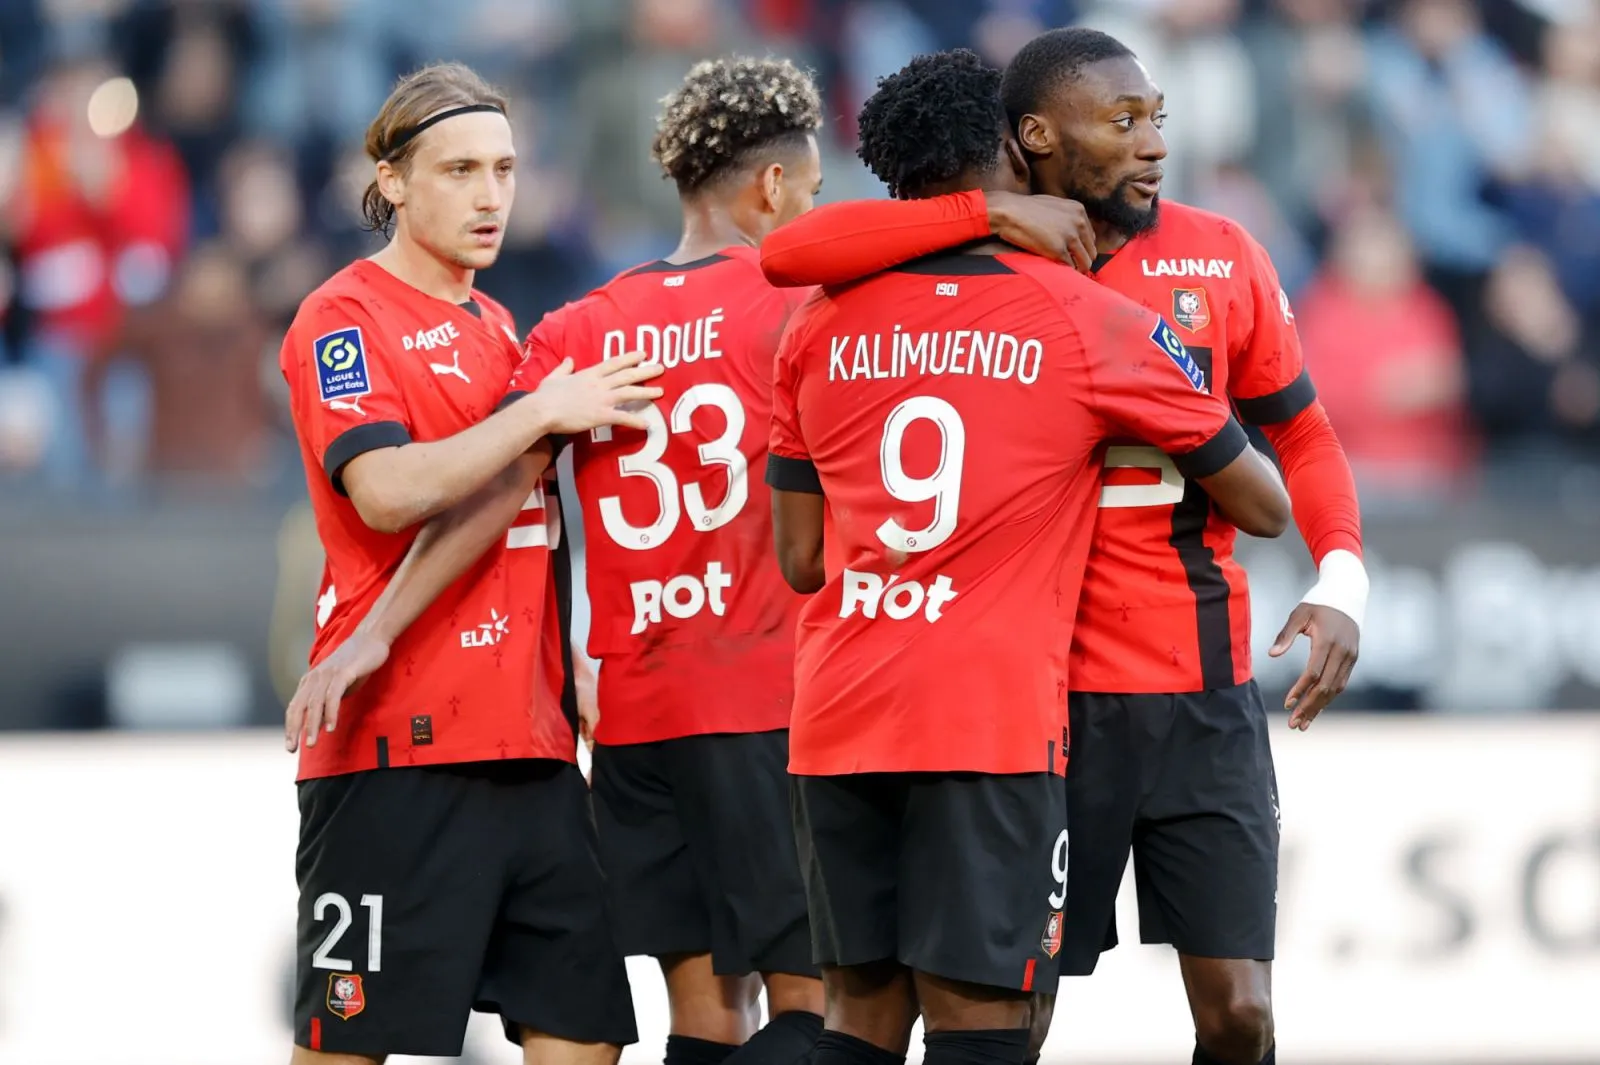 Pronostic Rennes OM : Analyse, cotes et prono du match de Ligue 1